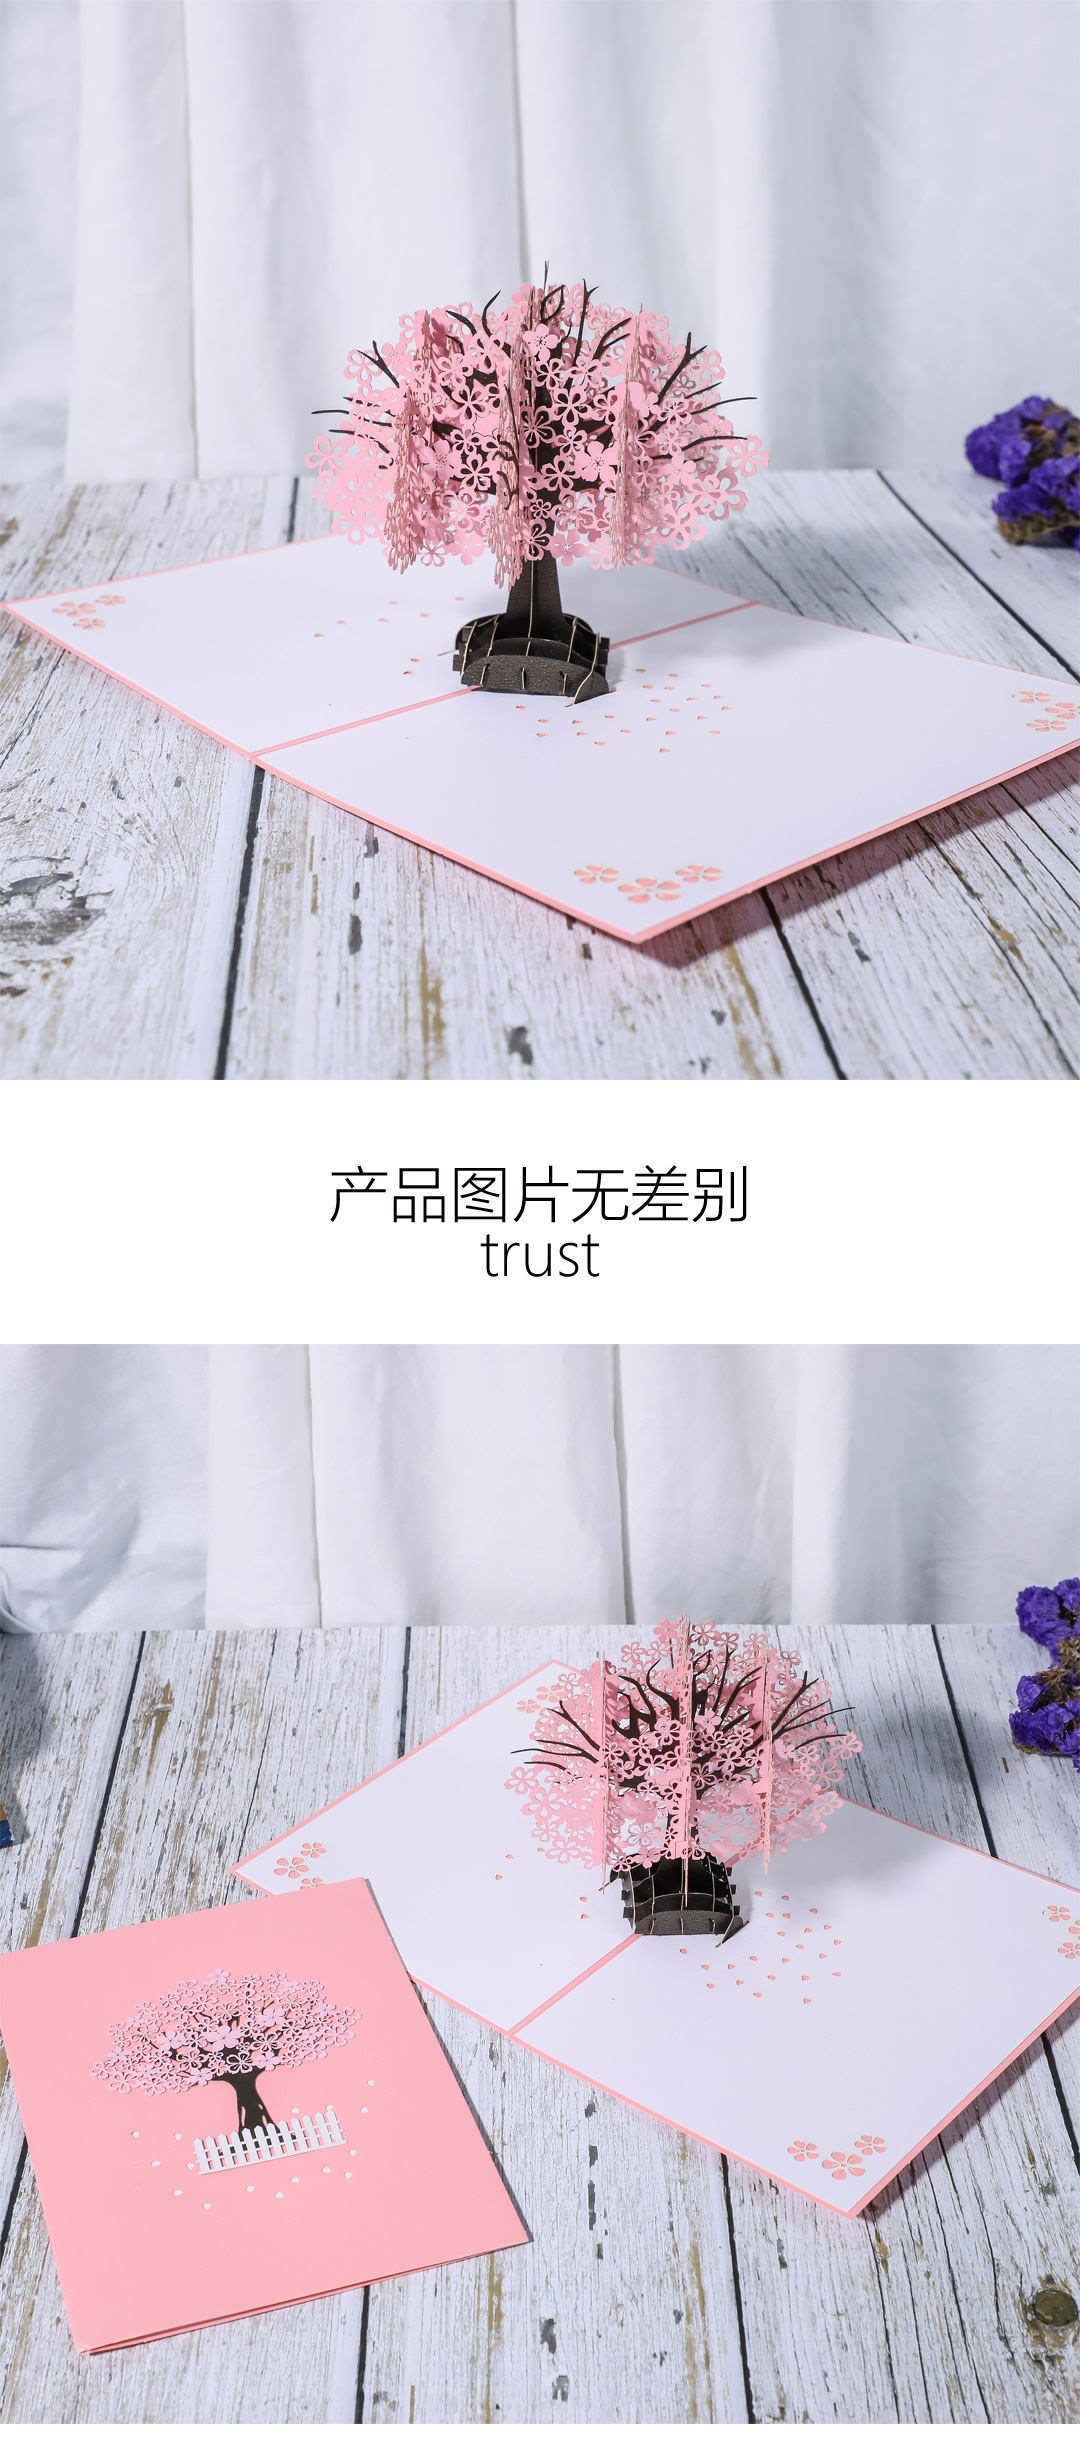 樱花-春天花卉主题海报/贺卡/信纸设计psd素材 – 设计小咖